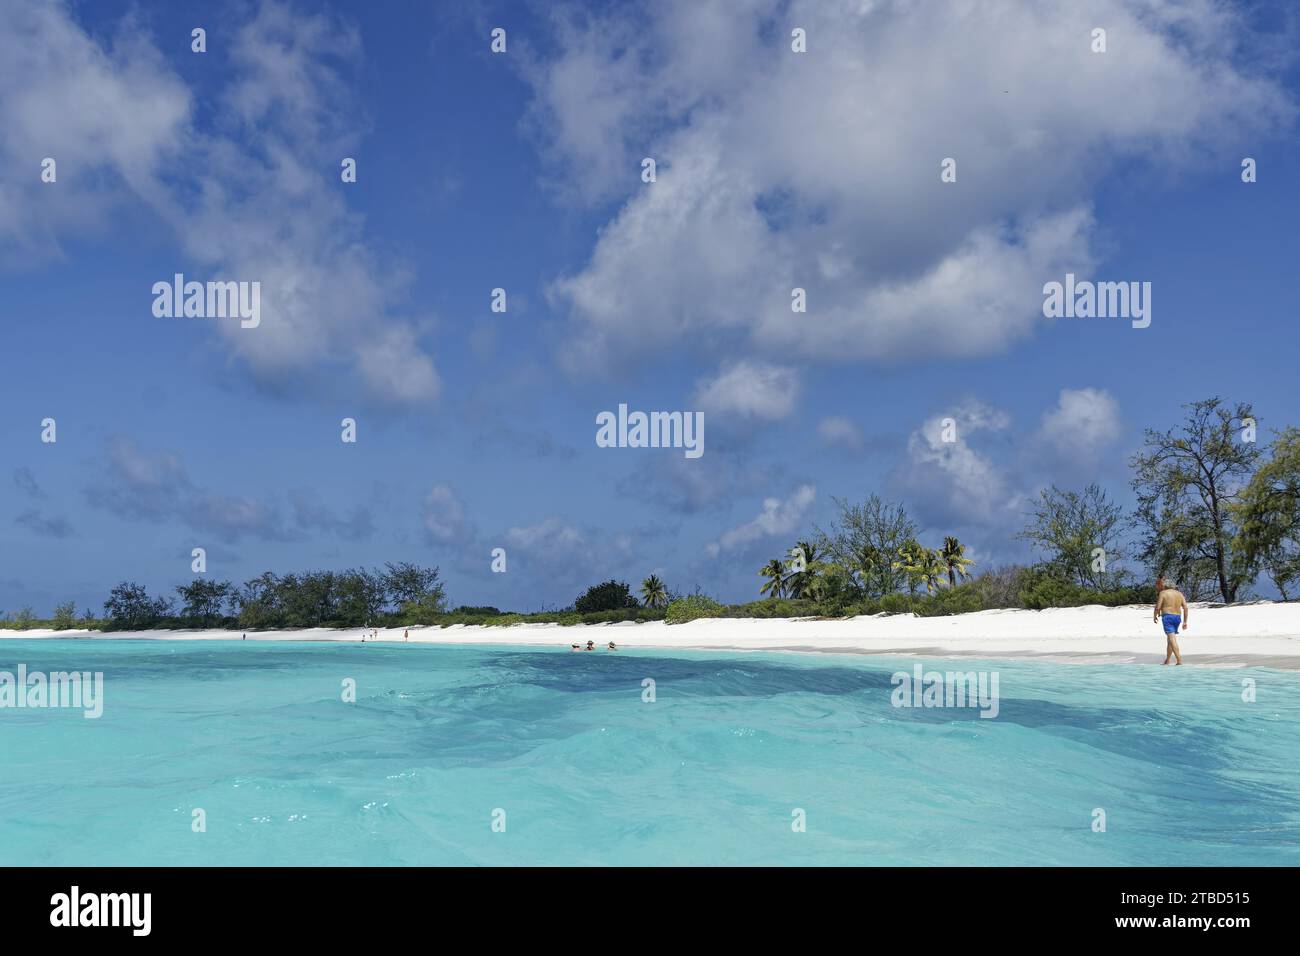 Plage blanche, eau bleu turquoise, ciel bleu avec petits nuages, île de l'Assomption, Aldabra, Seychelles Banque D'Images